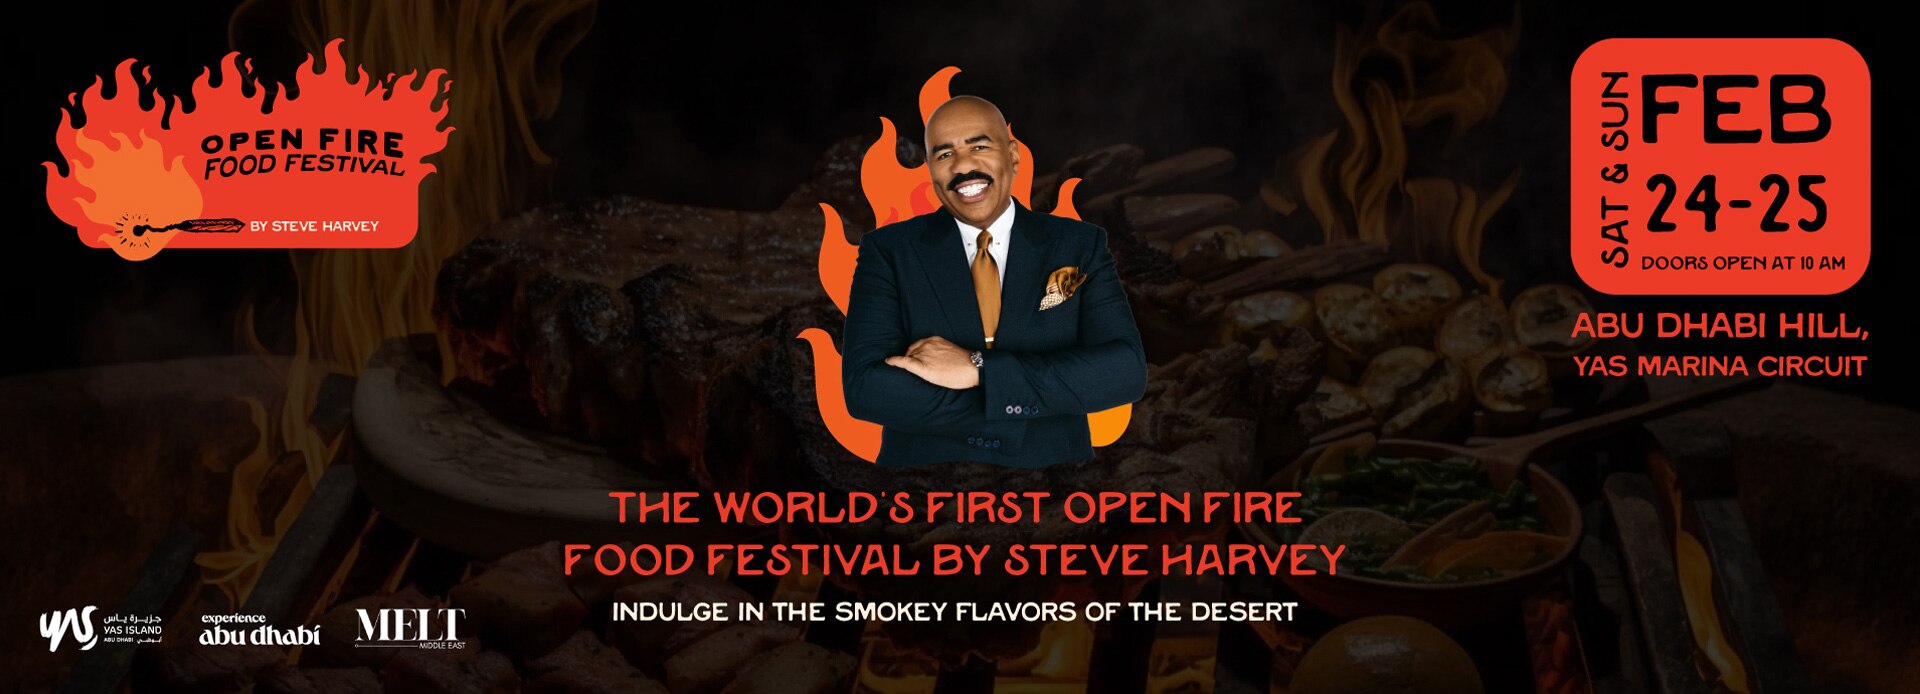 OPEN FIRE FOOD FESTIVAL BY STEVE HARVEY